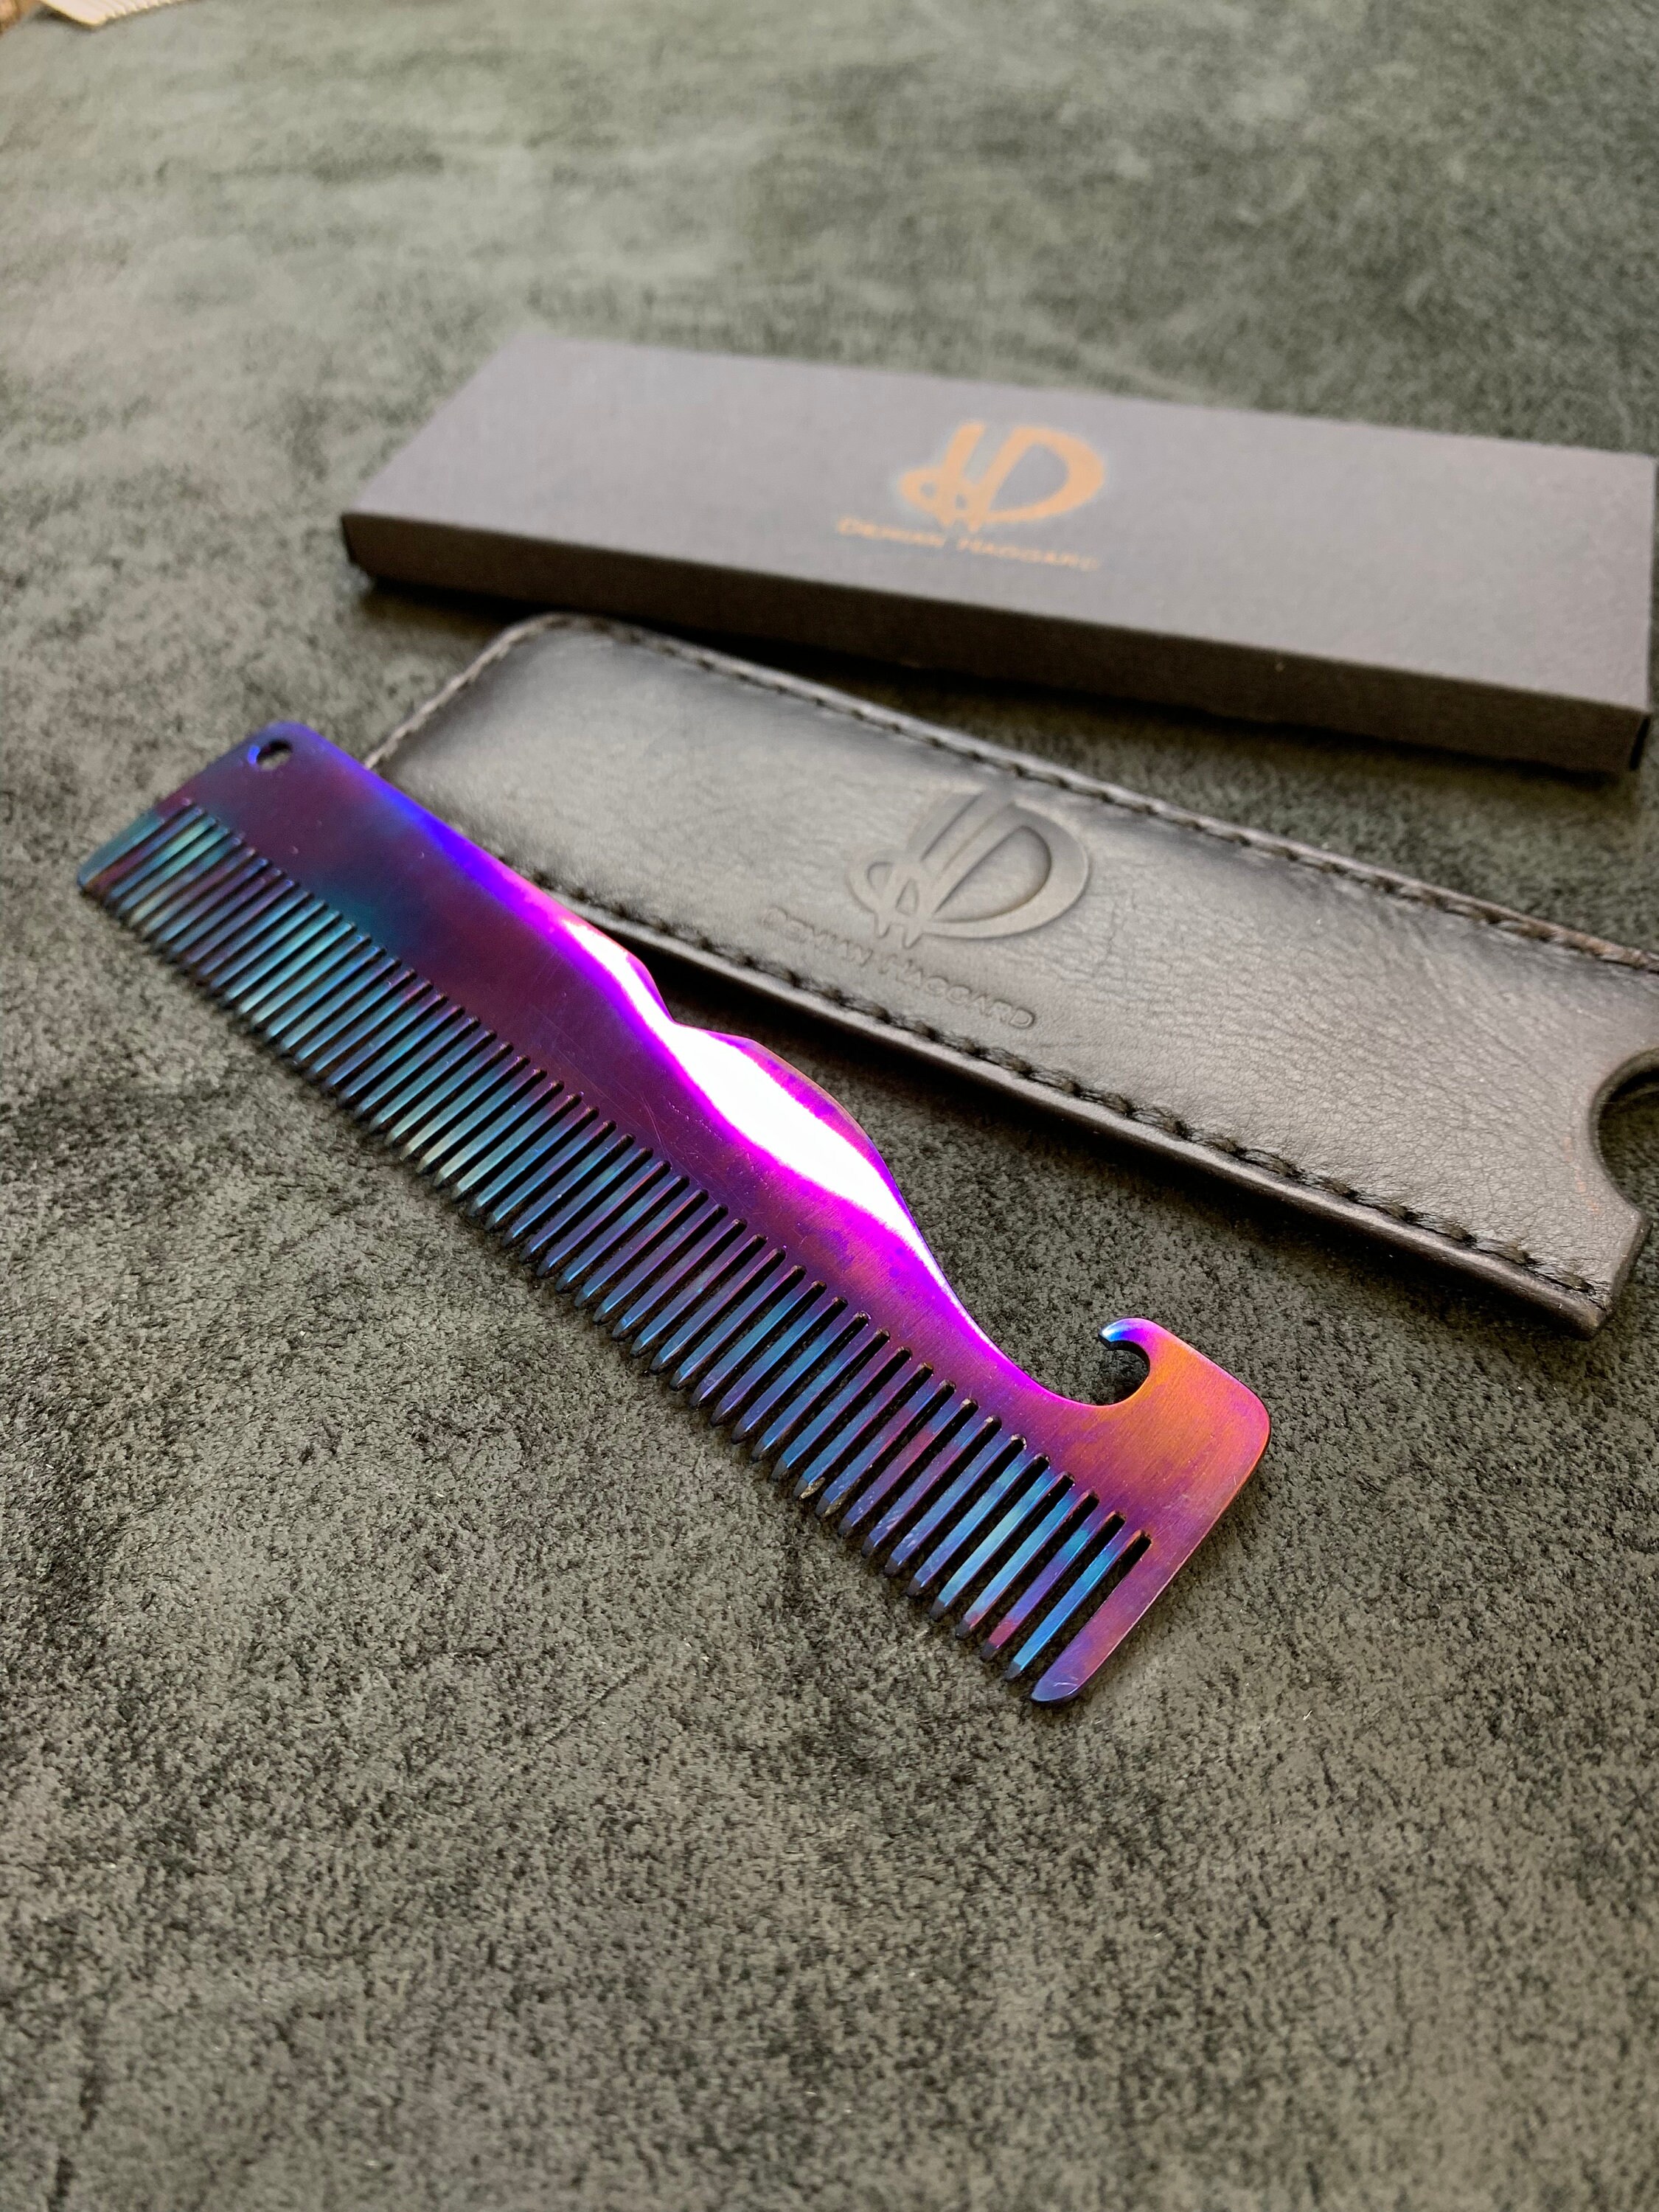 Titanium Beard Comb With Leather Storage Case. Titanium Edc. 